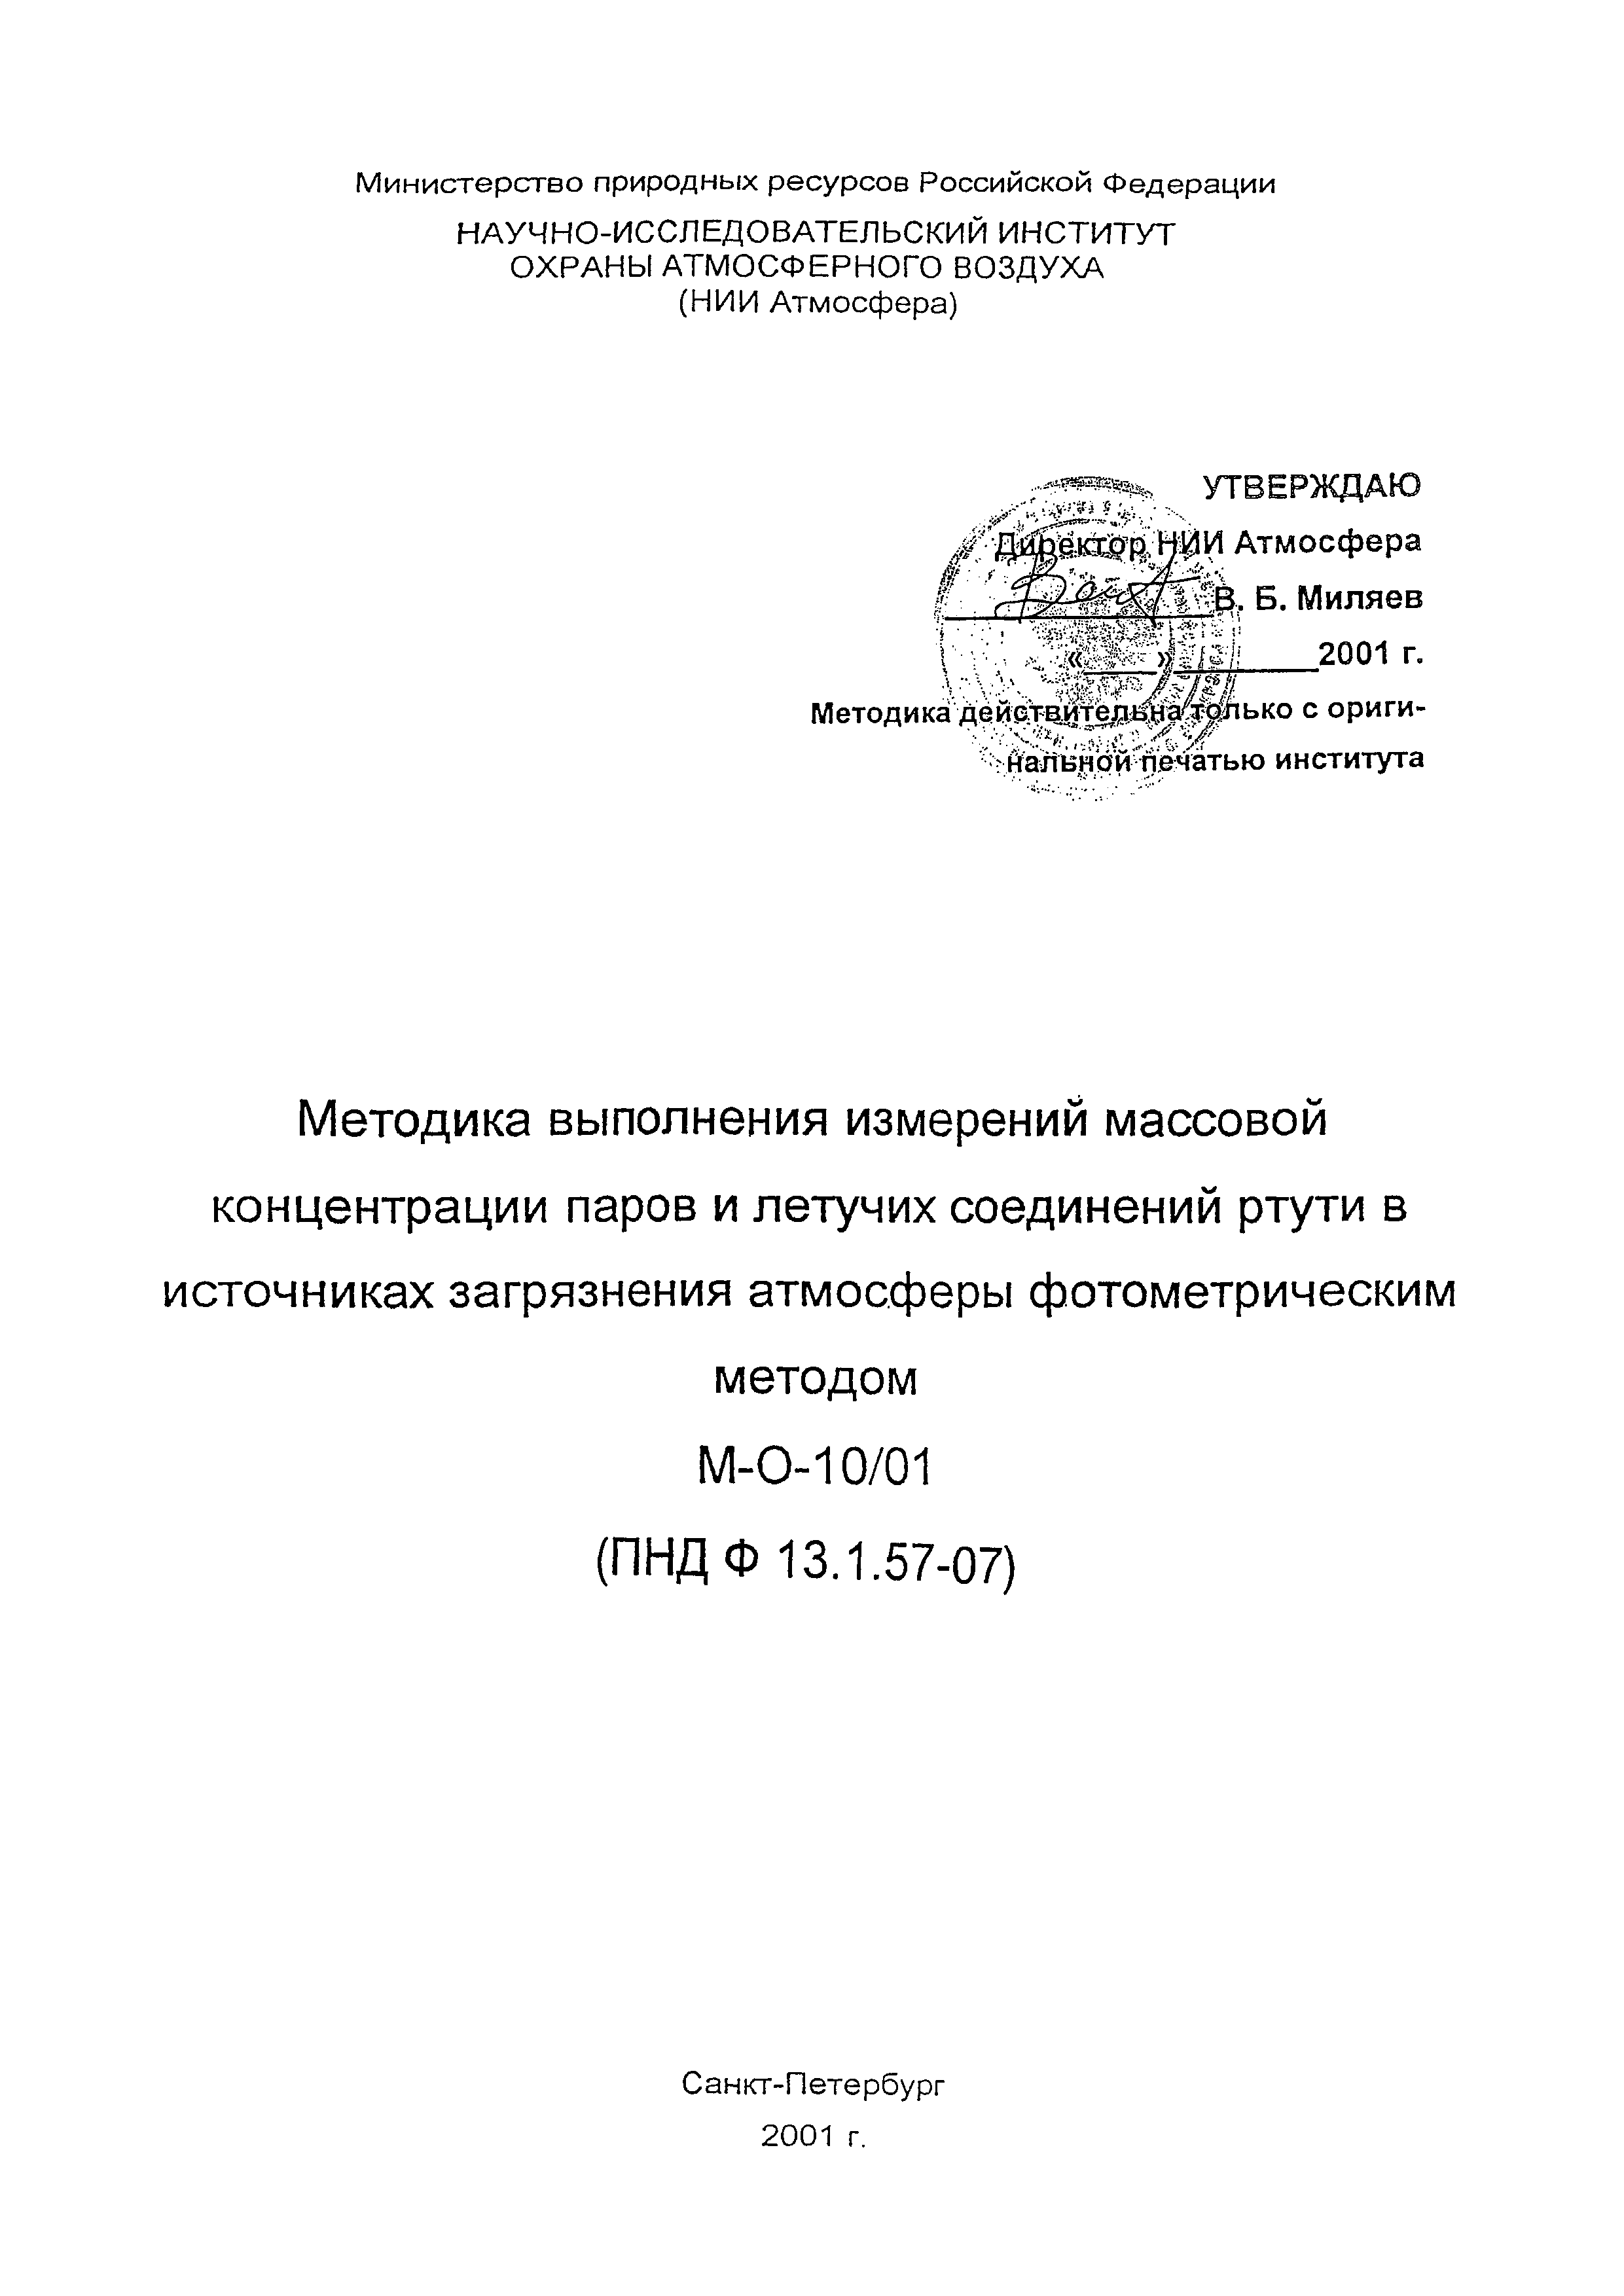 ПНД Ф 13.1.57-07